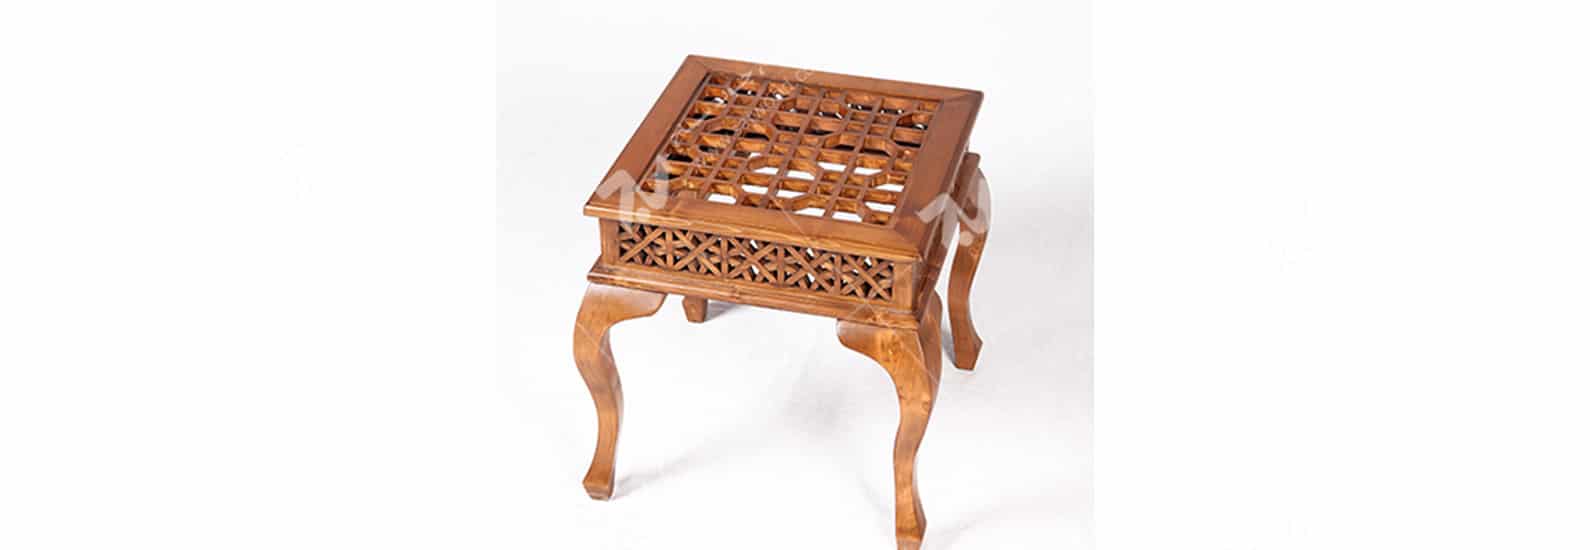 میز عسلی ، پذیرایی (کنارمبلی) چوبی سنتی مشبک گره چینی - سمن کد۳۱۴